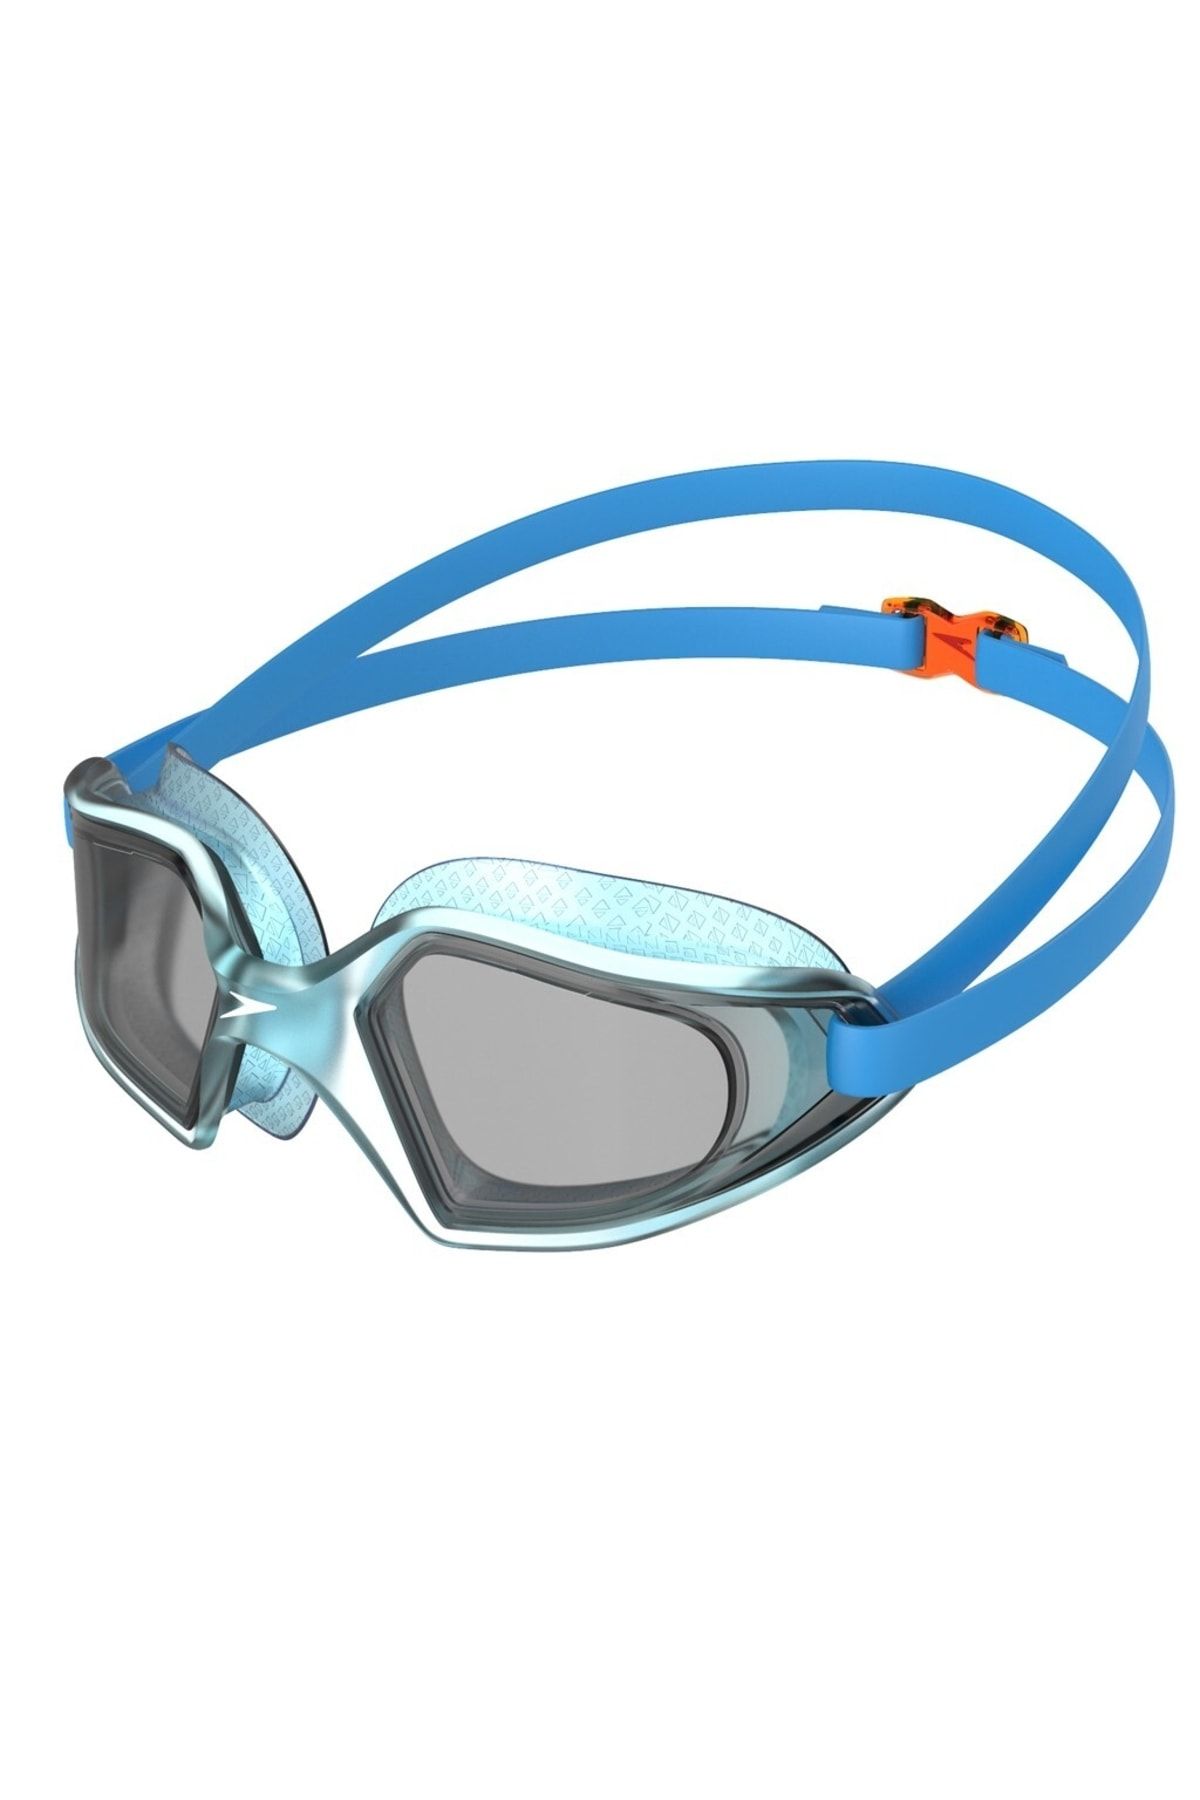 SPEEDO Hydropulse Çocuk Gözlüğü (mavi)